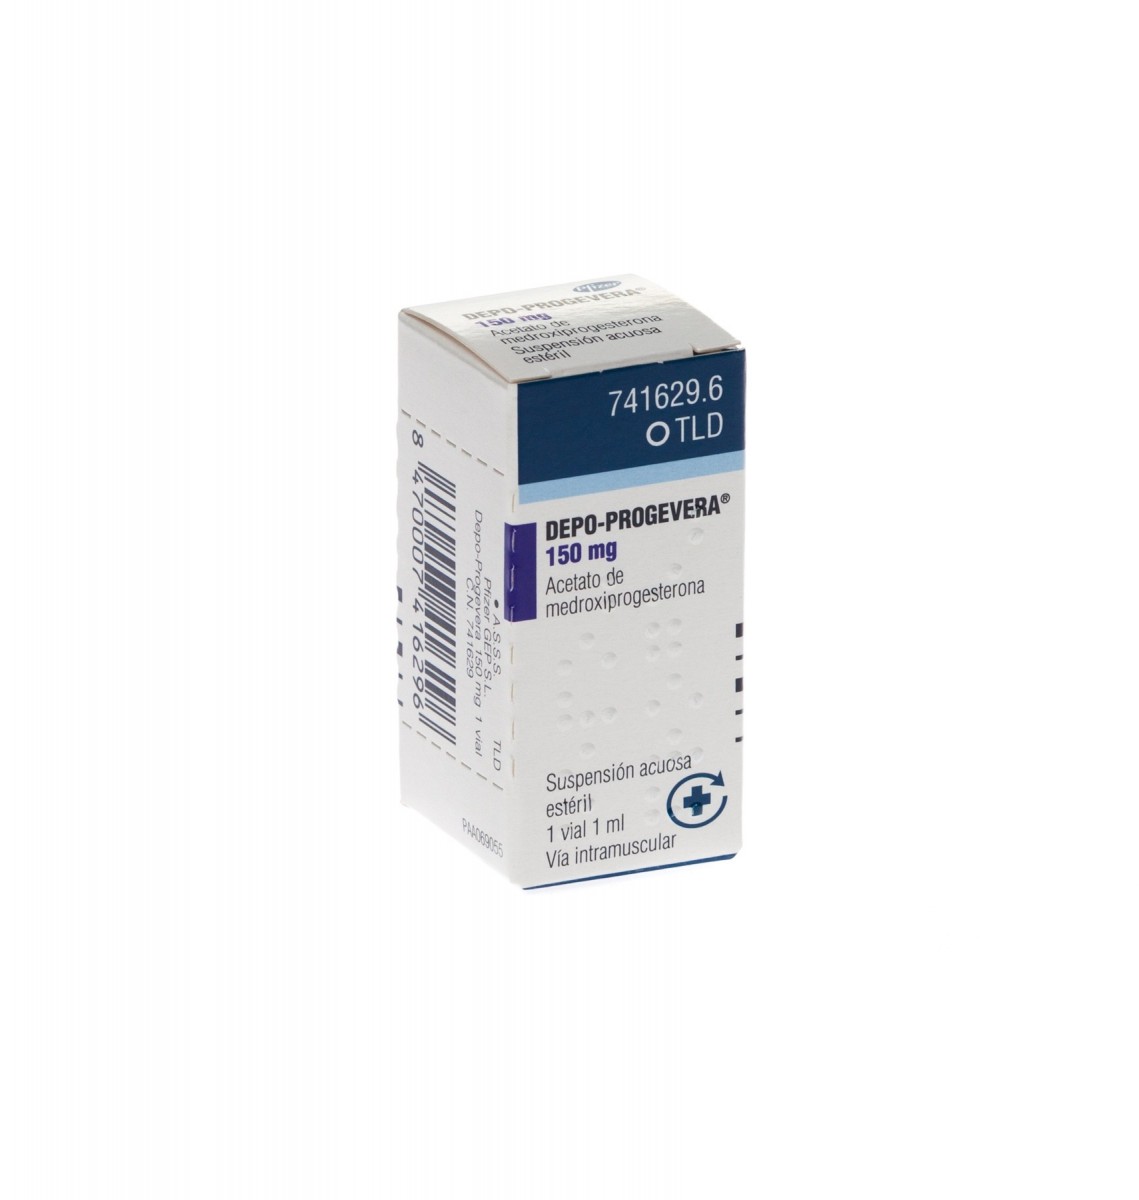 DEPO-PROGEVERA 150 mg/ml SUSPENSION INYECTABLE, 1 vial de 1 ml fotografía del envase.